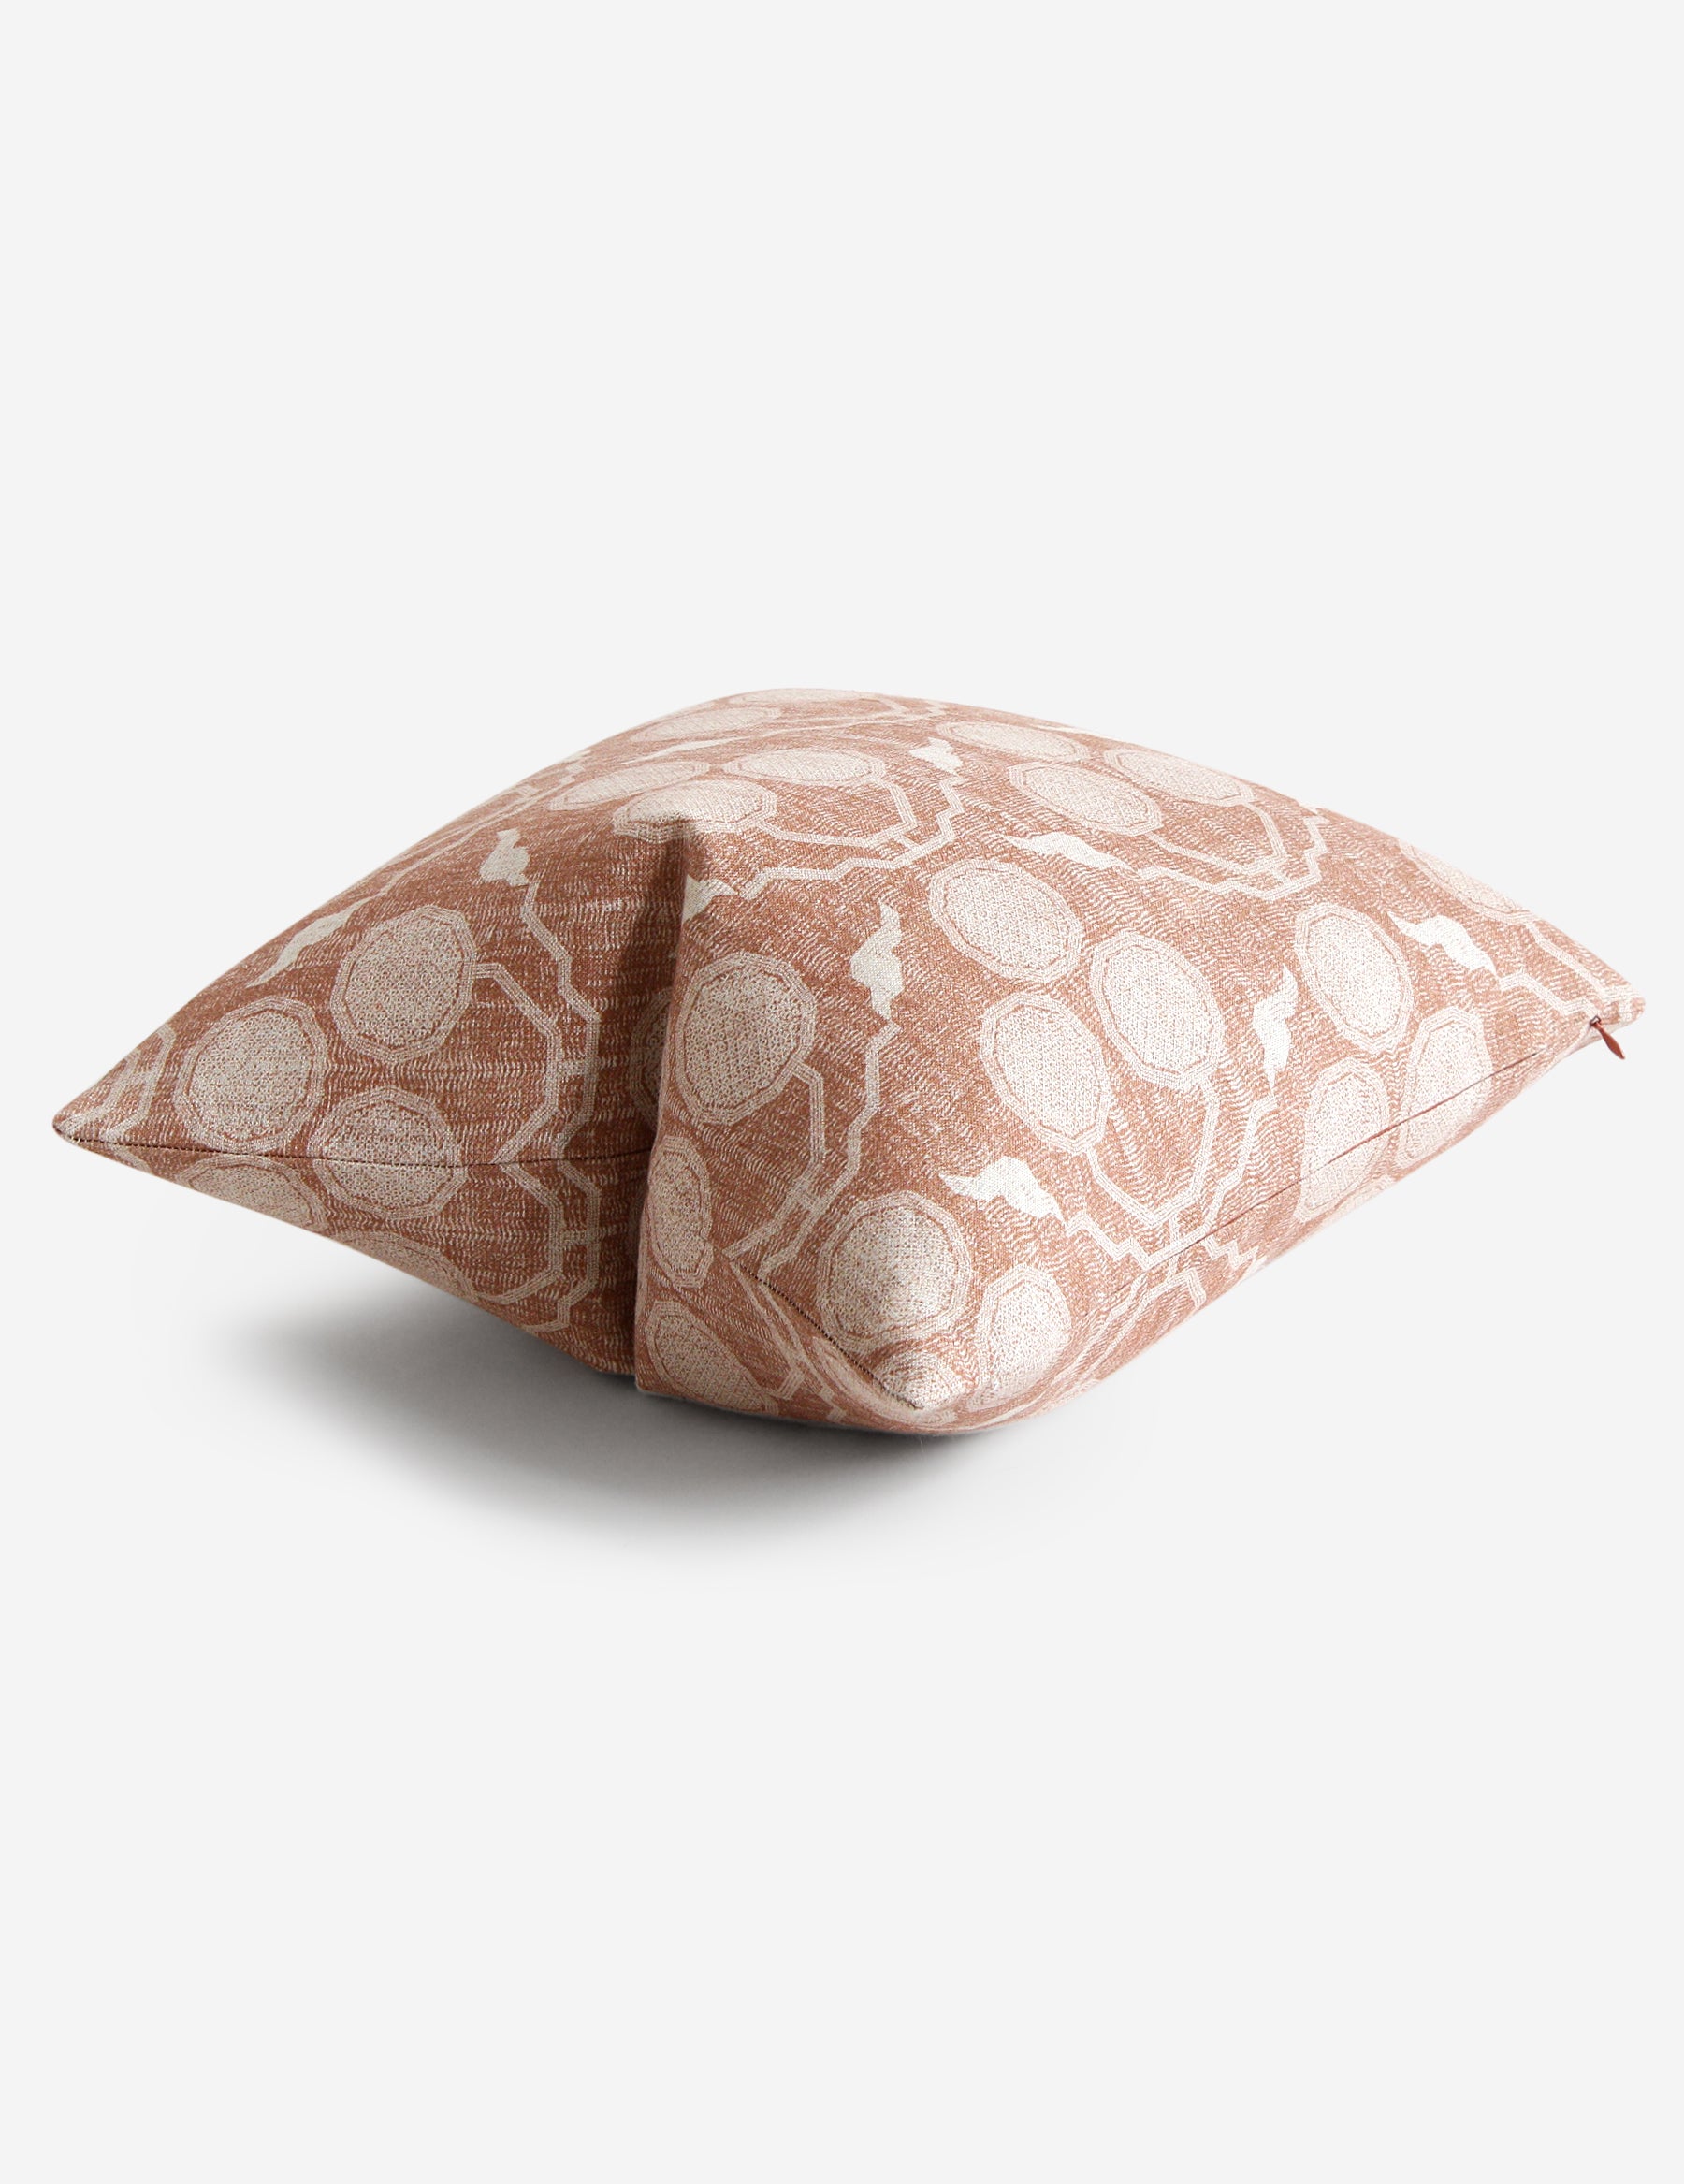 Pommia Pillow / Terracotta